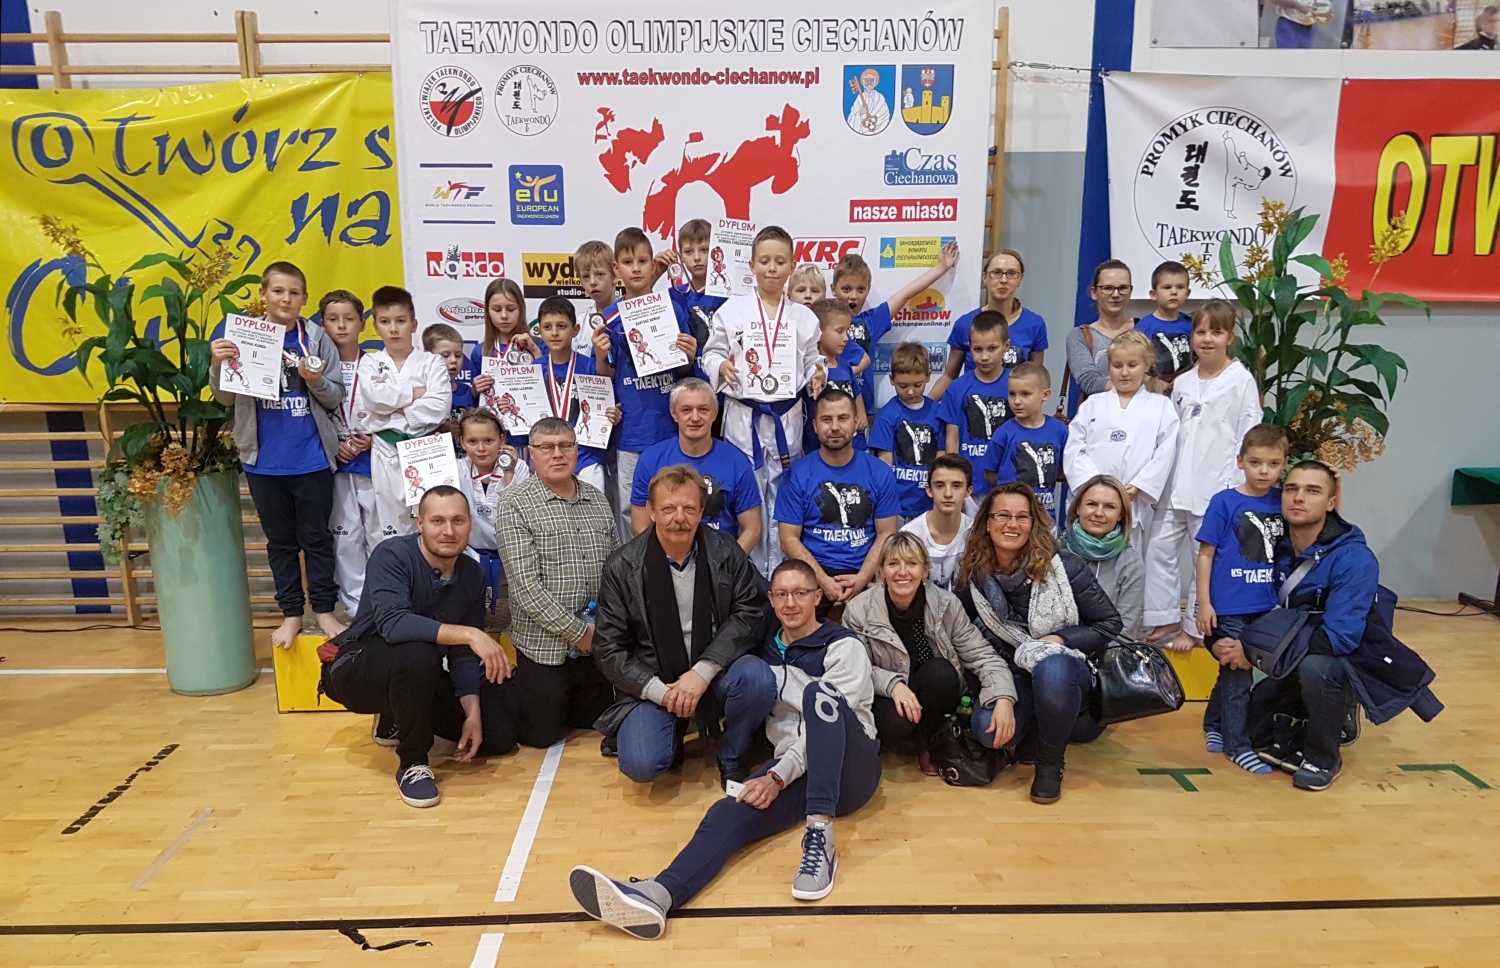 Otwarte Mistrzostwa Mazowsza Dzieci i Młodzików w Taekwondo Olimpijskim, Ciechanów 5.11.2016 r.